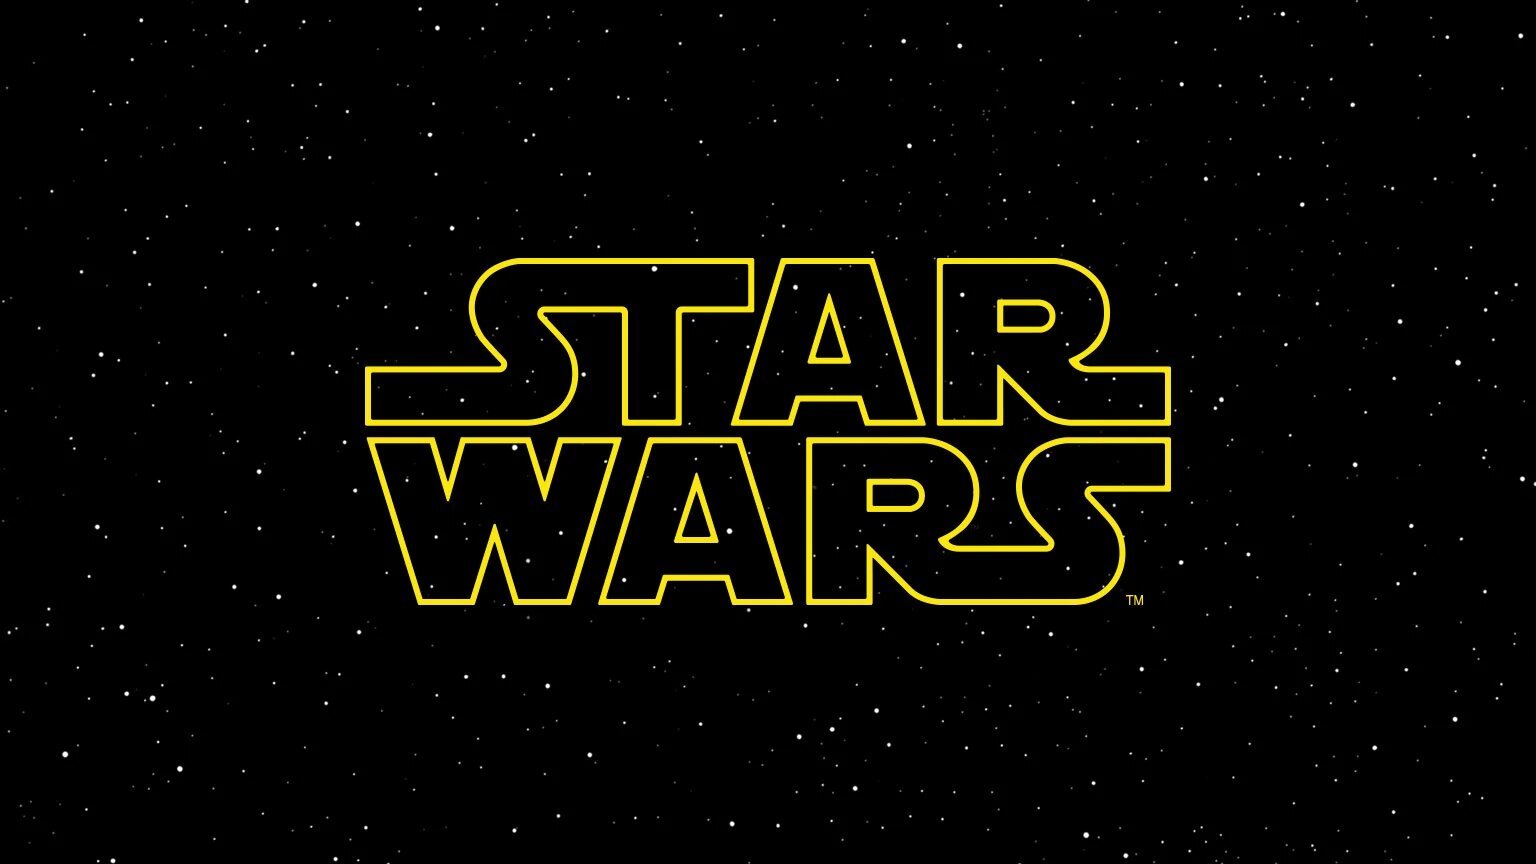 Έχουμε την ΑΠΟΛΥΤΗ σειρά για να δεις τα Star Wars, και είναι ώρα να τη μάθεις!